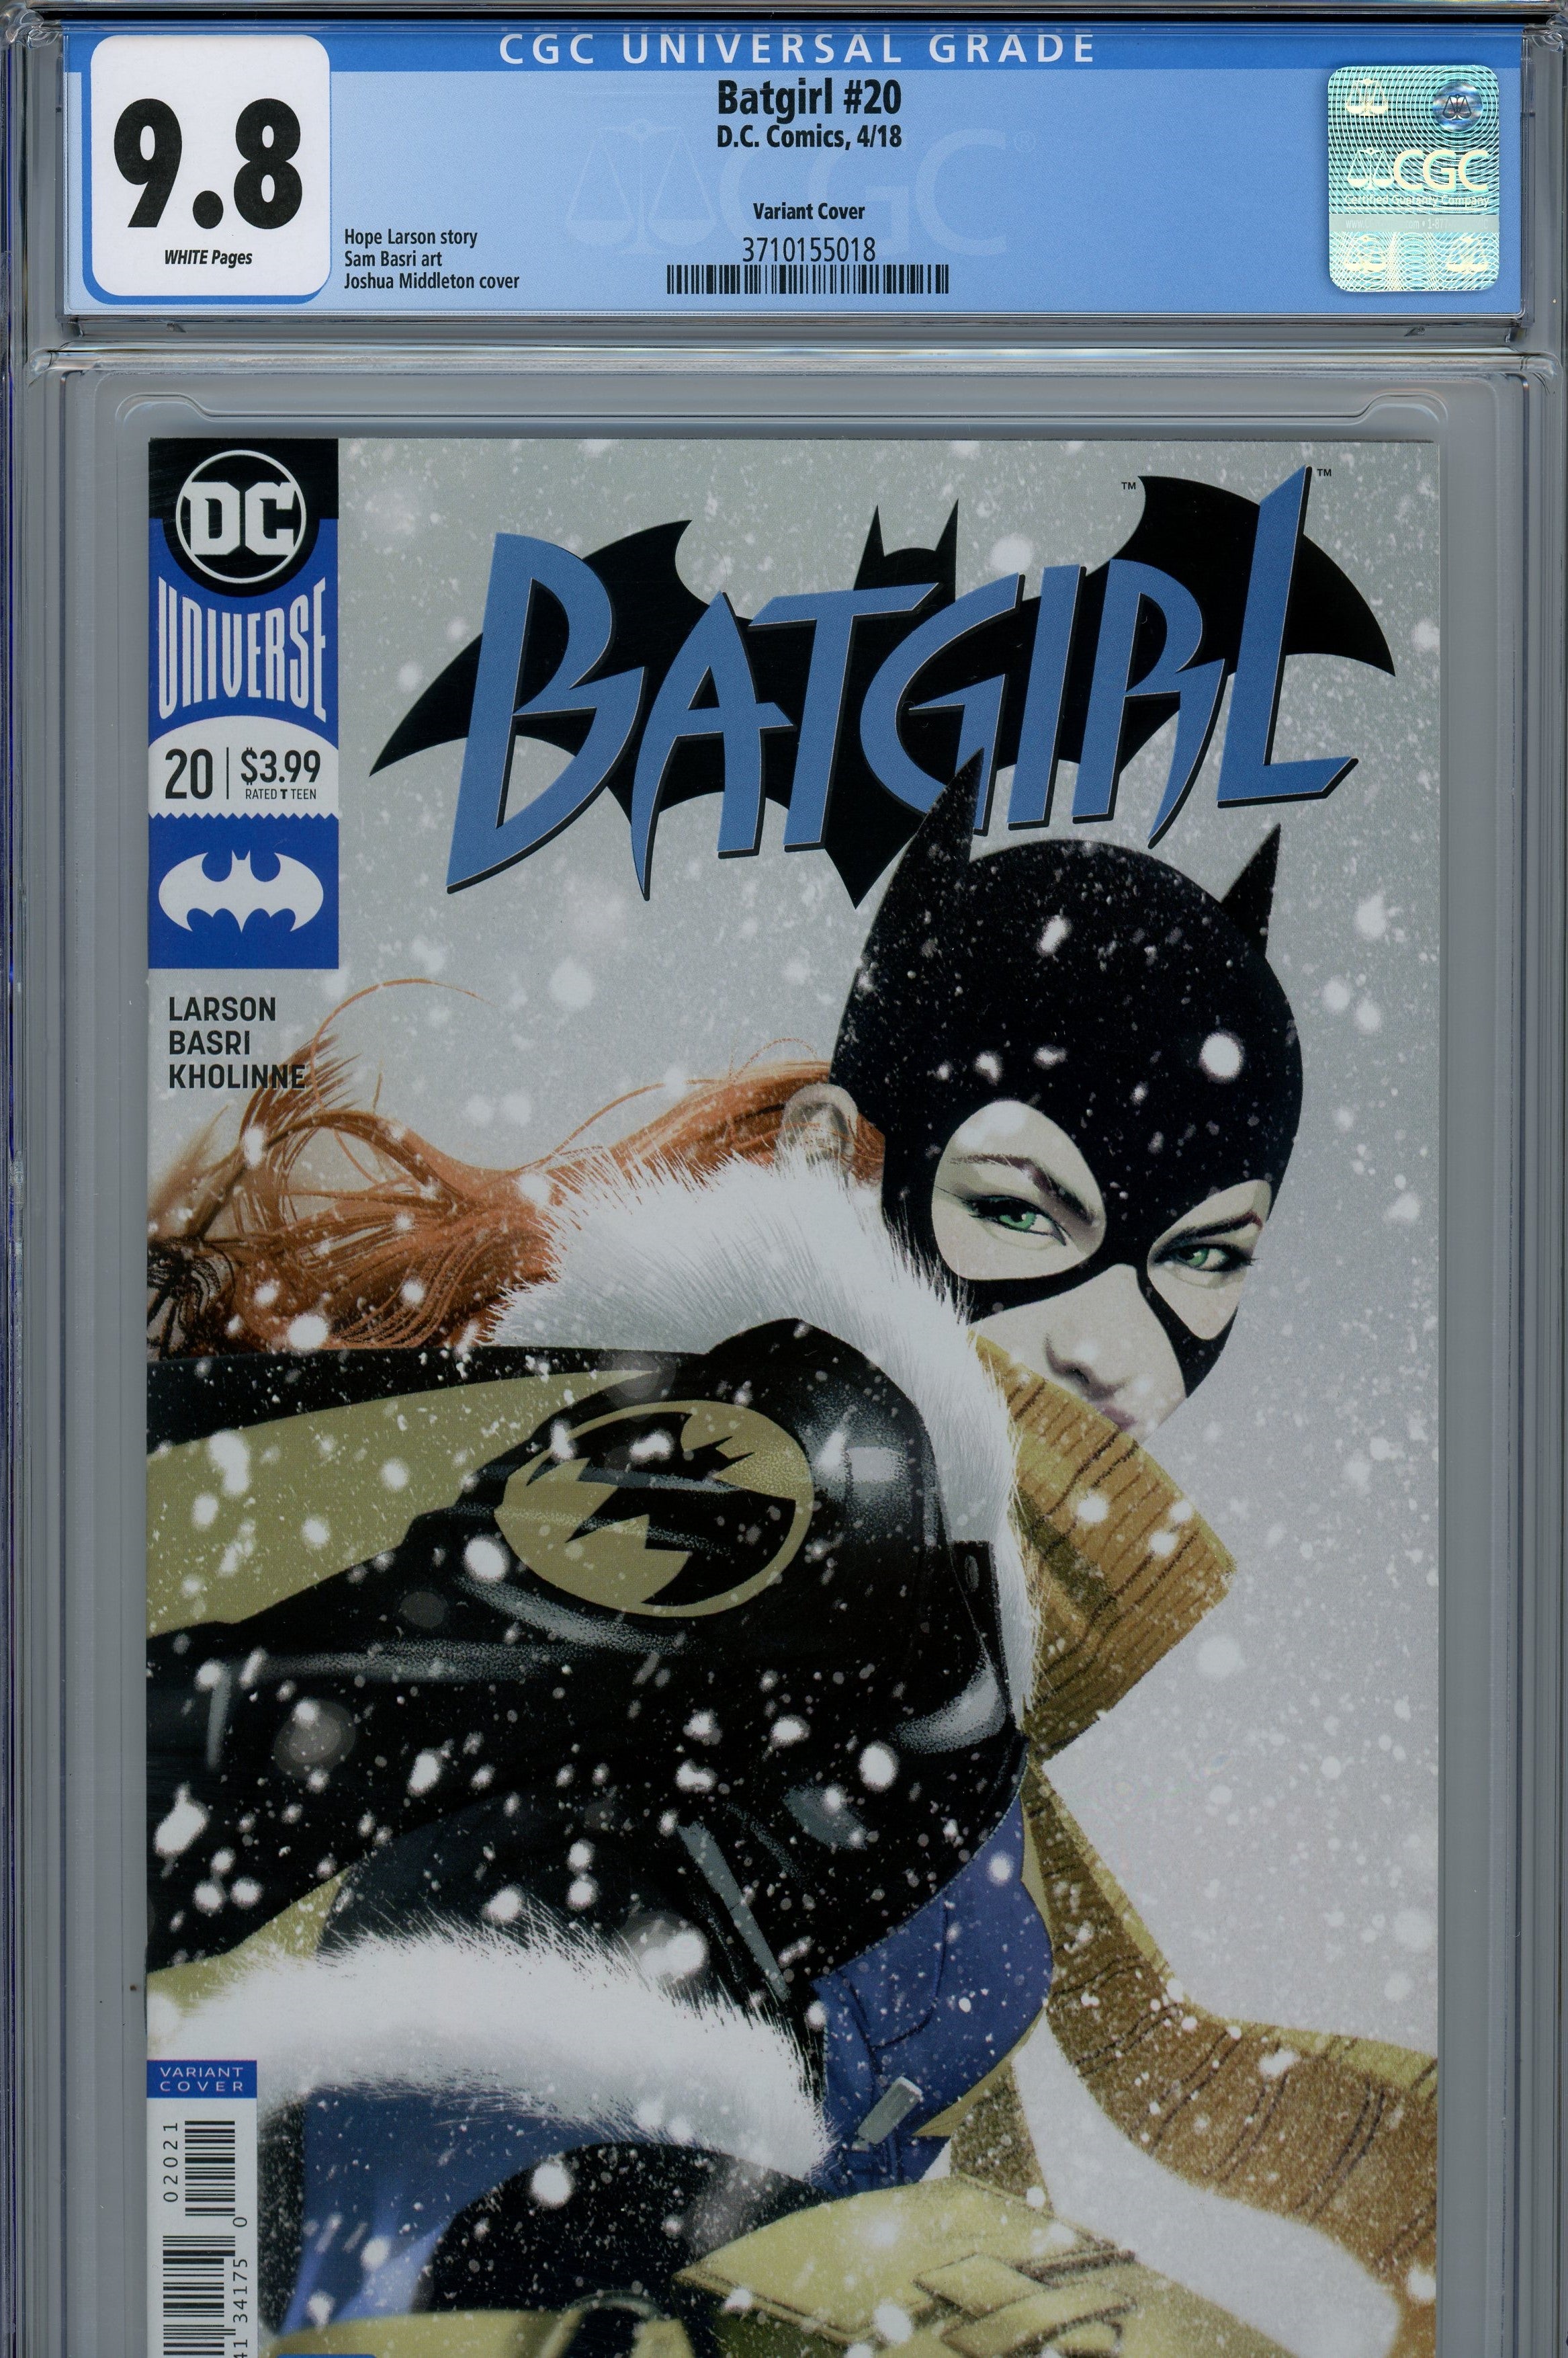 CGC 9.8 Batgirl Dectective comics 2018/04 #20